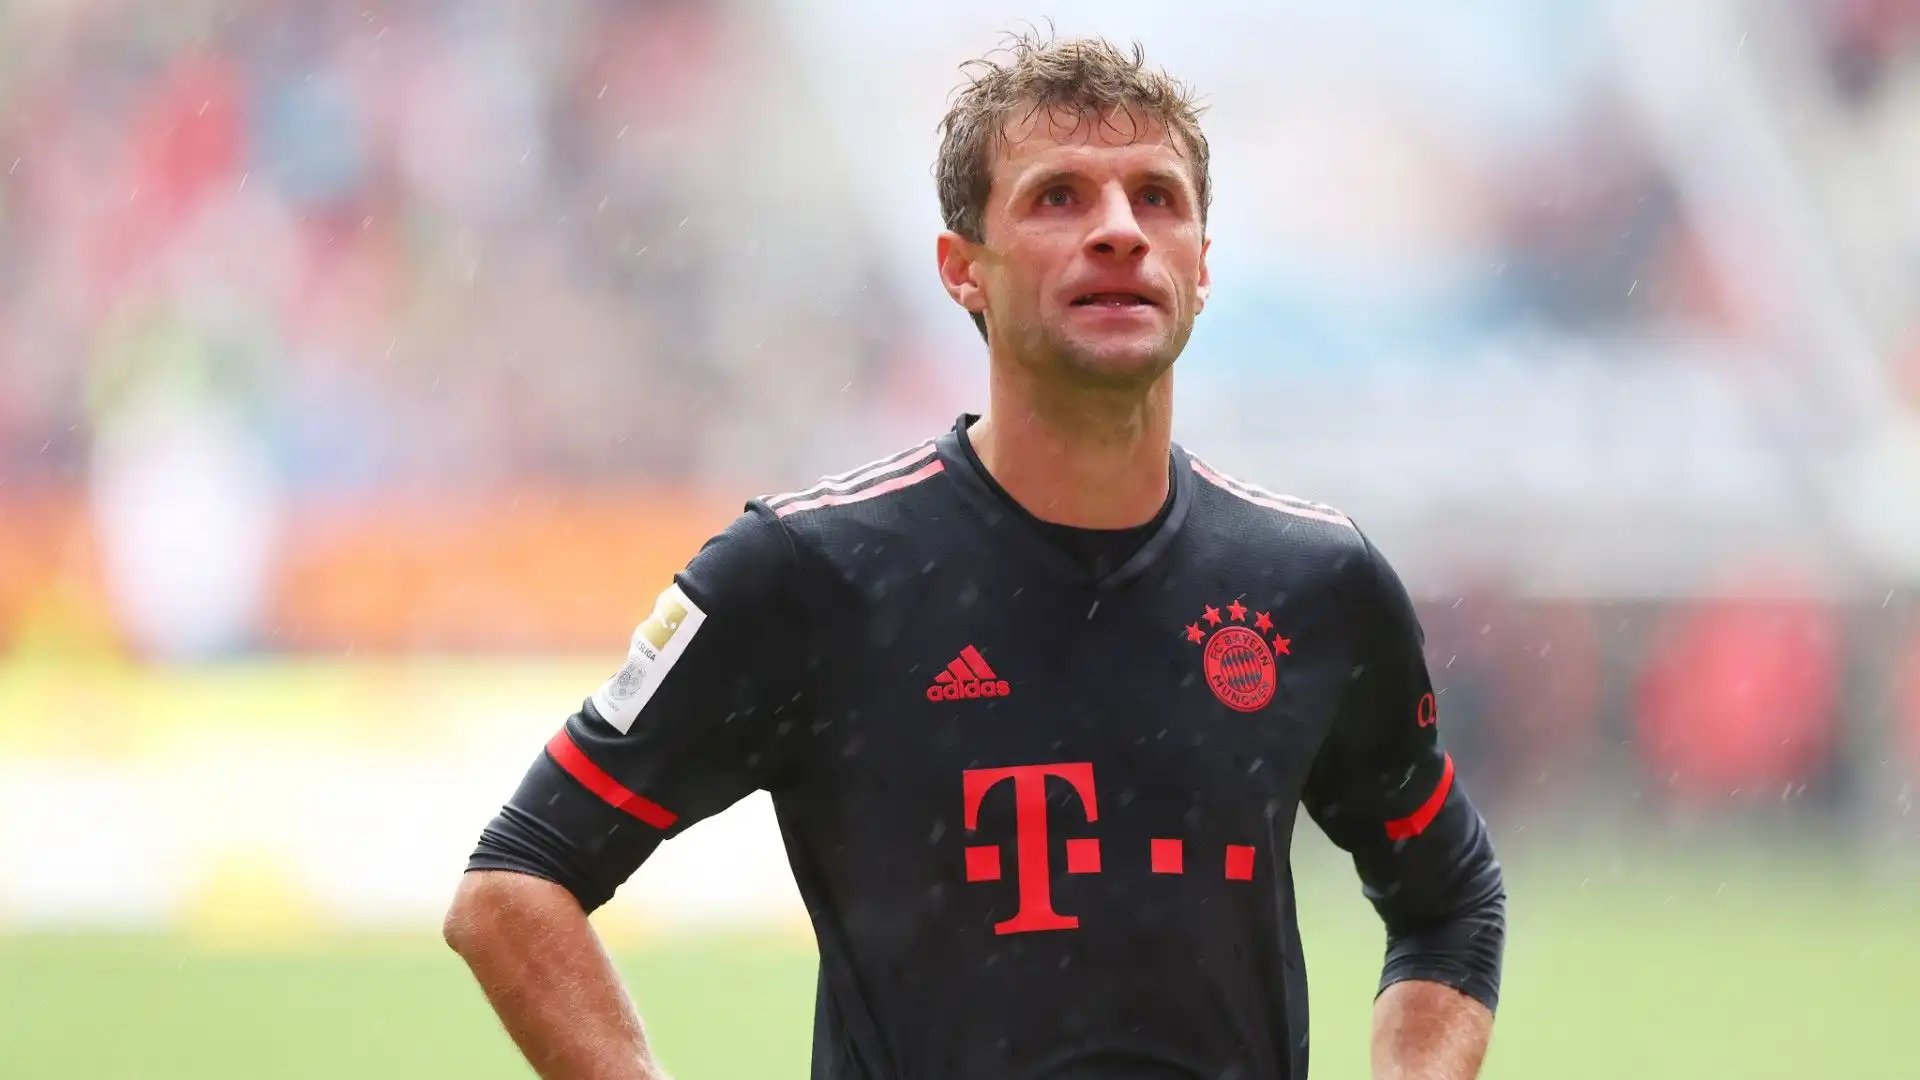 Nei giorni scorsi si era parlato di un possibile addio di Thomas Muller al Bayern Monaco. La notizia è stata smentita